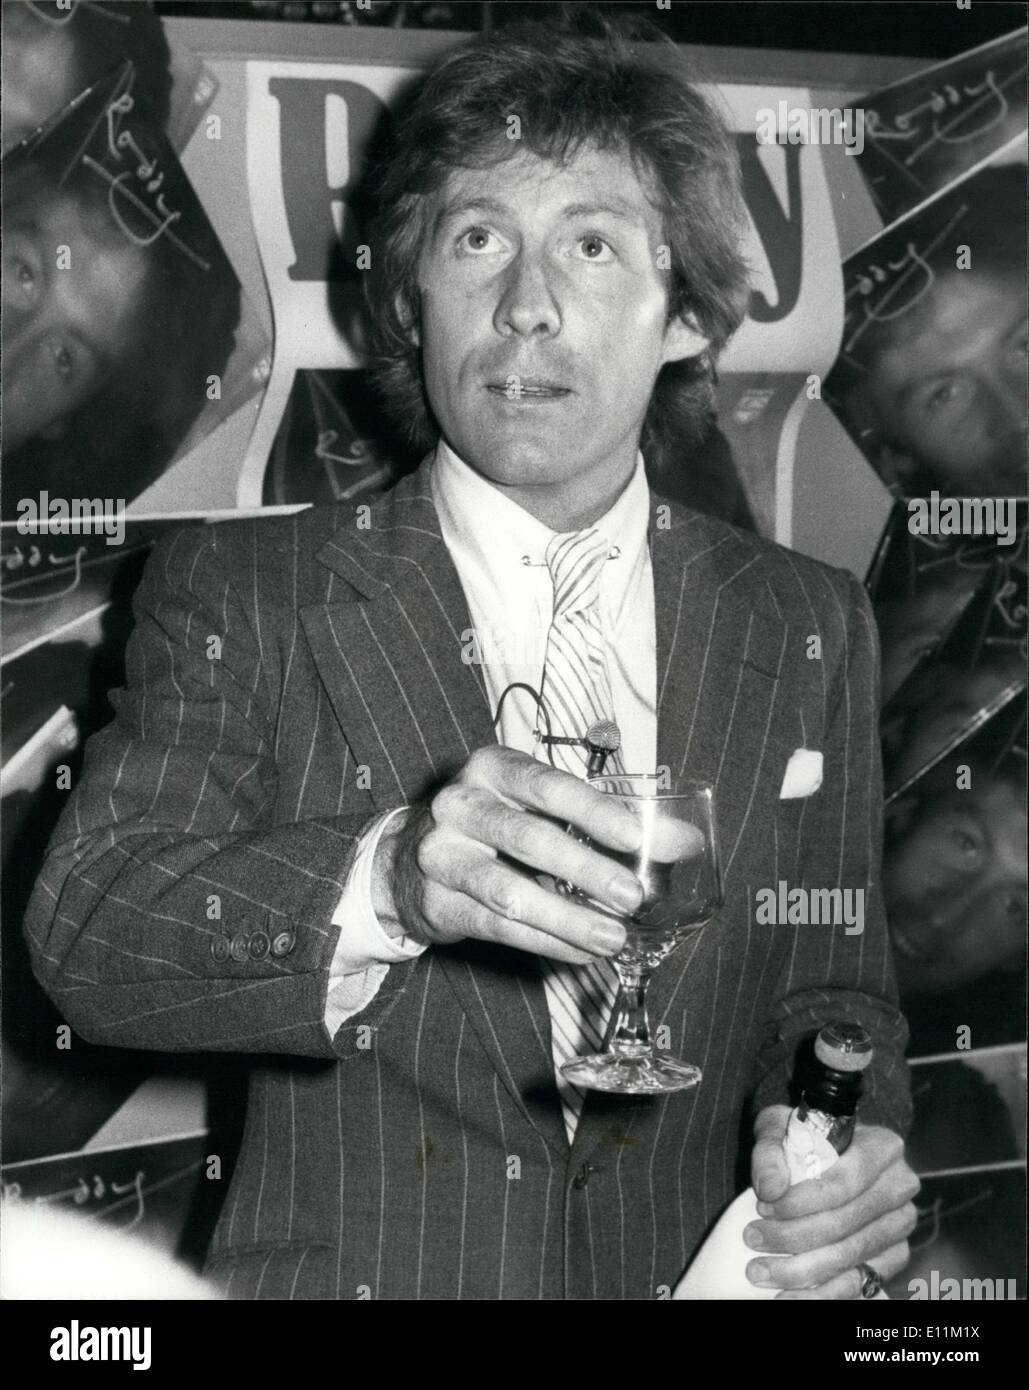 10 octobre 1978 - Roddy lance son premier album : Roddy Llewellyn, le 31 ans, ami de la princesse Margaret, a organisé une fête à la promotion ''clochard'', dans la région de Jermyn Street Londres aujourd'hui pour le lancement de son premier album de 12 chansons intitulé Roddy. Photos Spectacles Roddy célèbre le lancement de son premier album de la ''clochard'' de nuit aujourd'hui. Banque D'Images